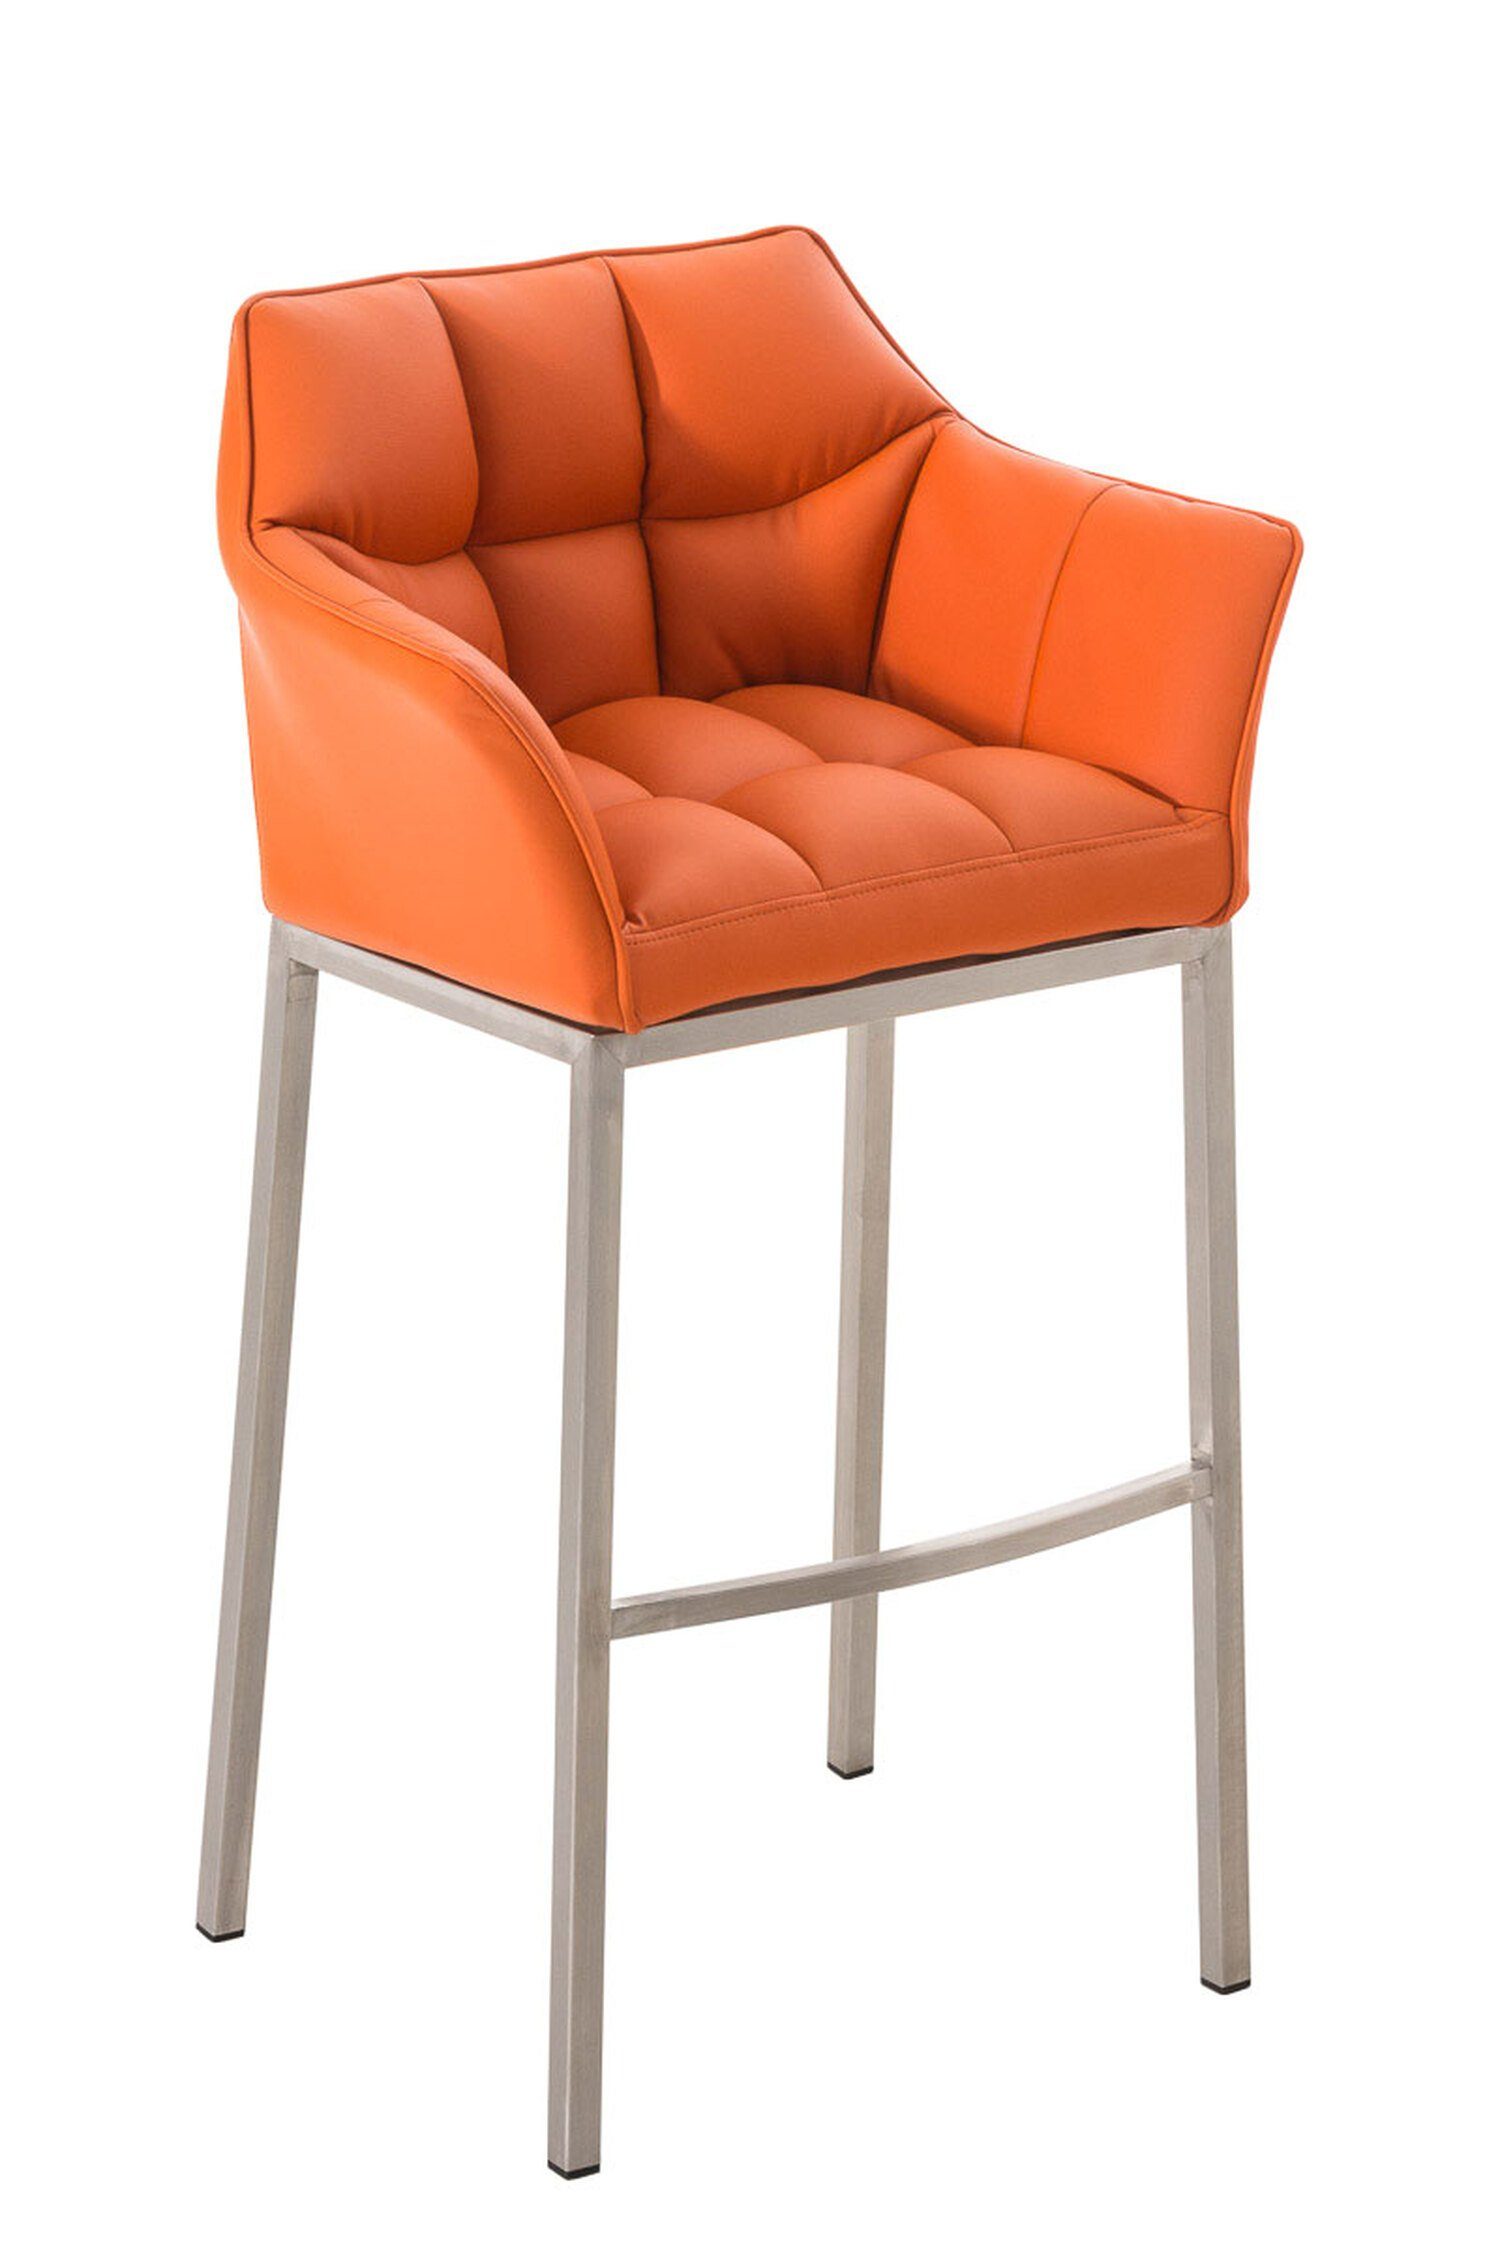 TPFLiving Barhocker Damaso (mit Rückenlehne und Fußstütze - Hocker für Theke & Küche), 4-Fuß Gestell Edelstahl - Sitzfläche: Kunstleder Orange